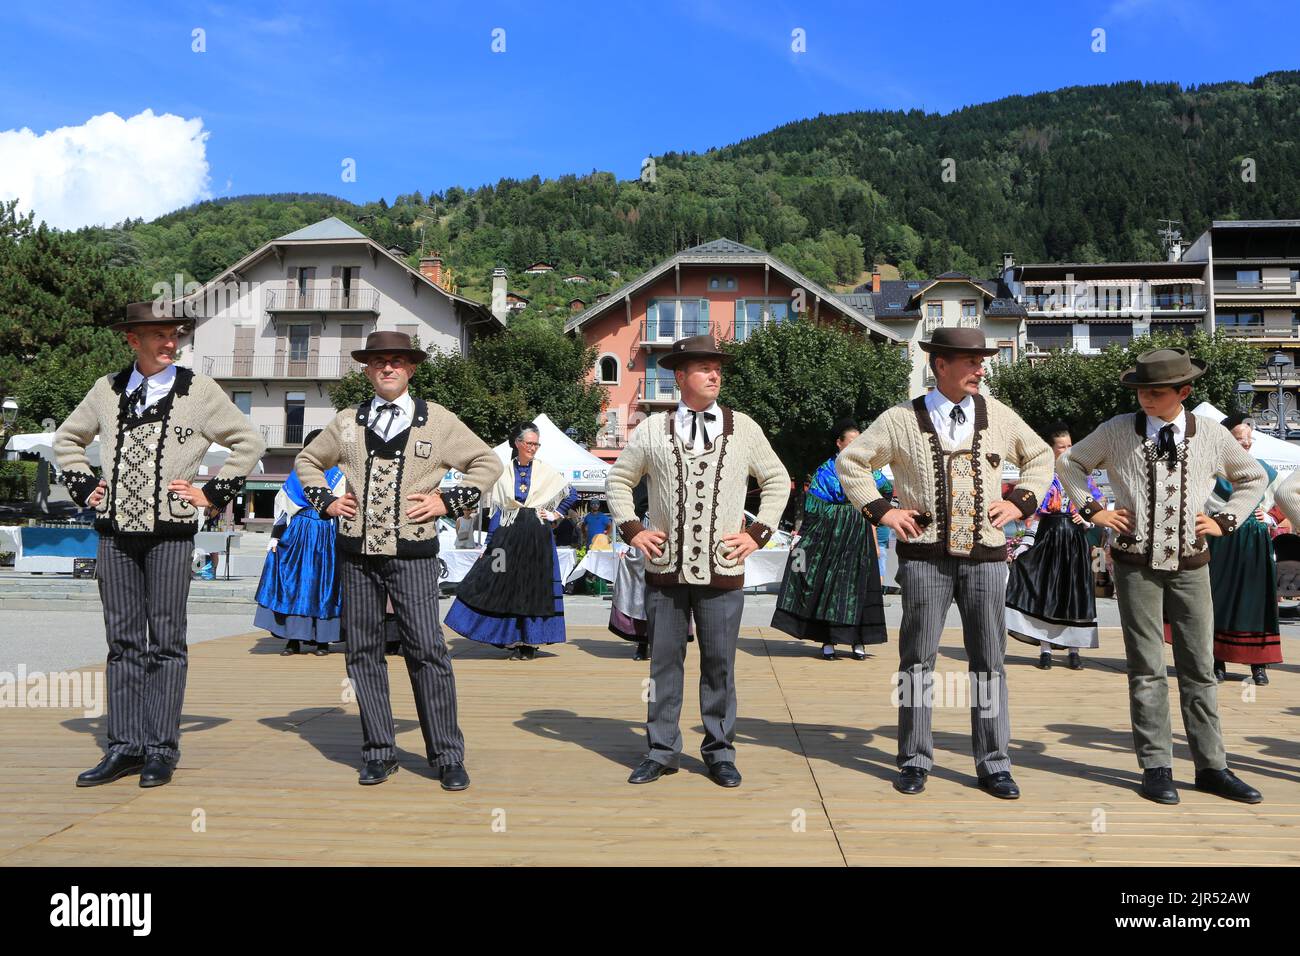 La Rioule. Danses folkloriques. Groupes folkloriques du Pays de Savoie. Espace Marie-Paradis. Saint-Gervais-les-Bains. Haute-Savoie. France. Stock Photo